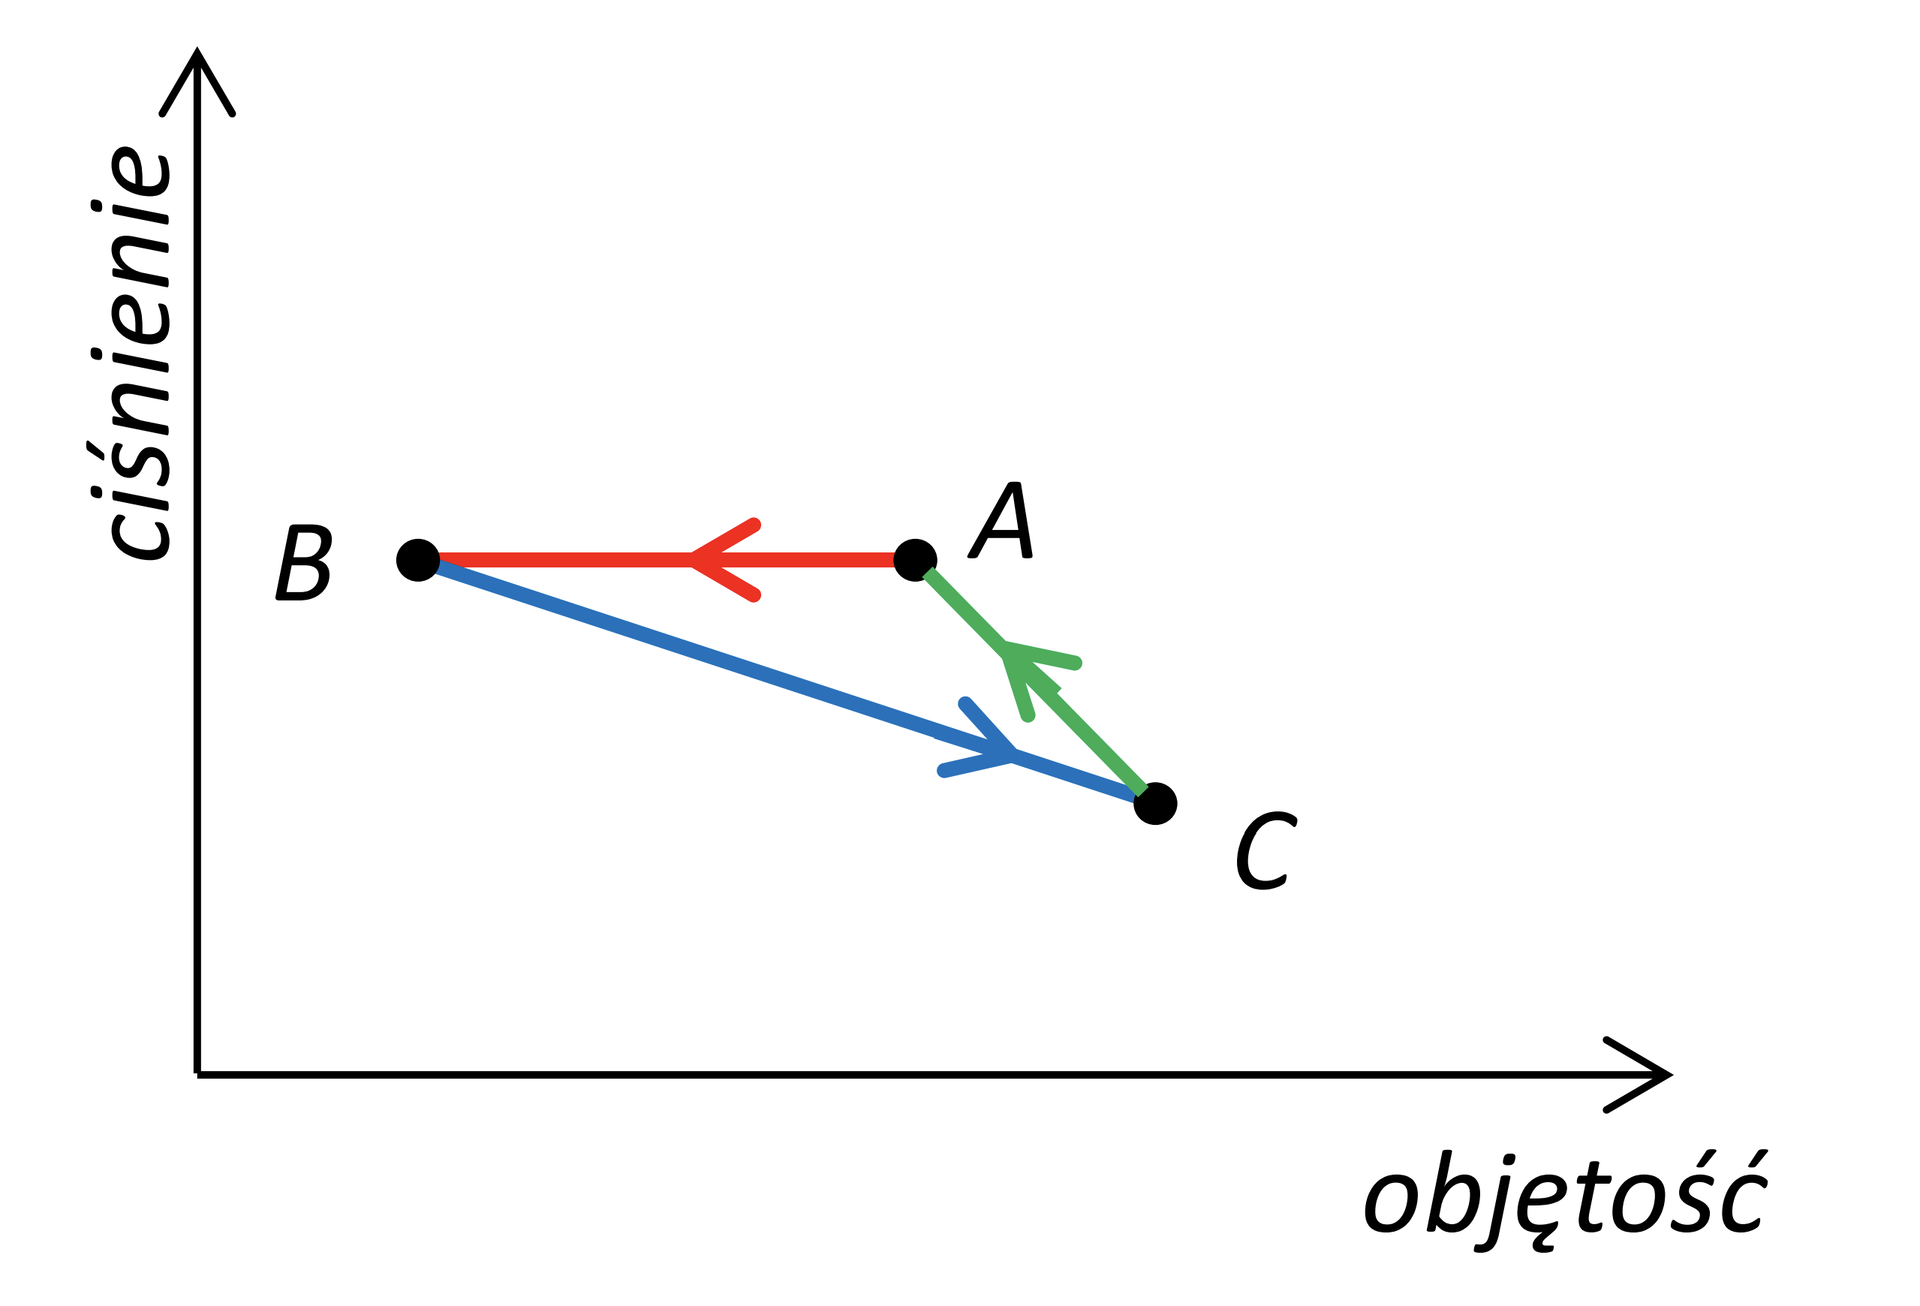 Na rysunku jest układ współrzędnych, na którego poziomej osi odłożono objętość, a na pionowej osi ciśnienie. Punkty, oznaczone wielkimi literami A, B i C, są wierzchołkami trójkąta. Boki trójkąta obrazują przemiany gazu. Przemianę AB obrazuje poziomy odcinek ze strzałką skierowaną w lewo. Przemianę BC obrazuje ukośny odcinek skierowany w dół i w prawo. Przemianę CA obrazuje ukośny odcinek skierowany w górę i w lewo.